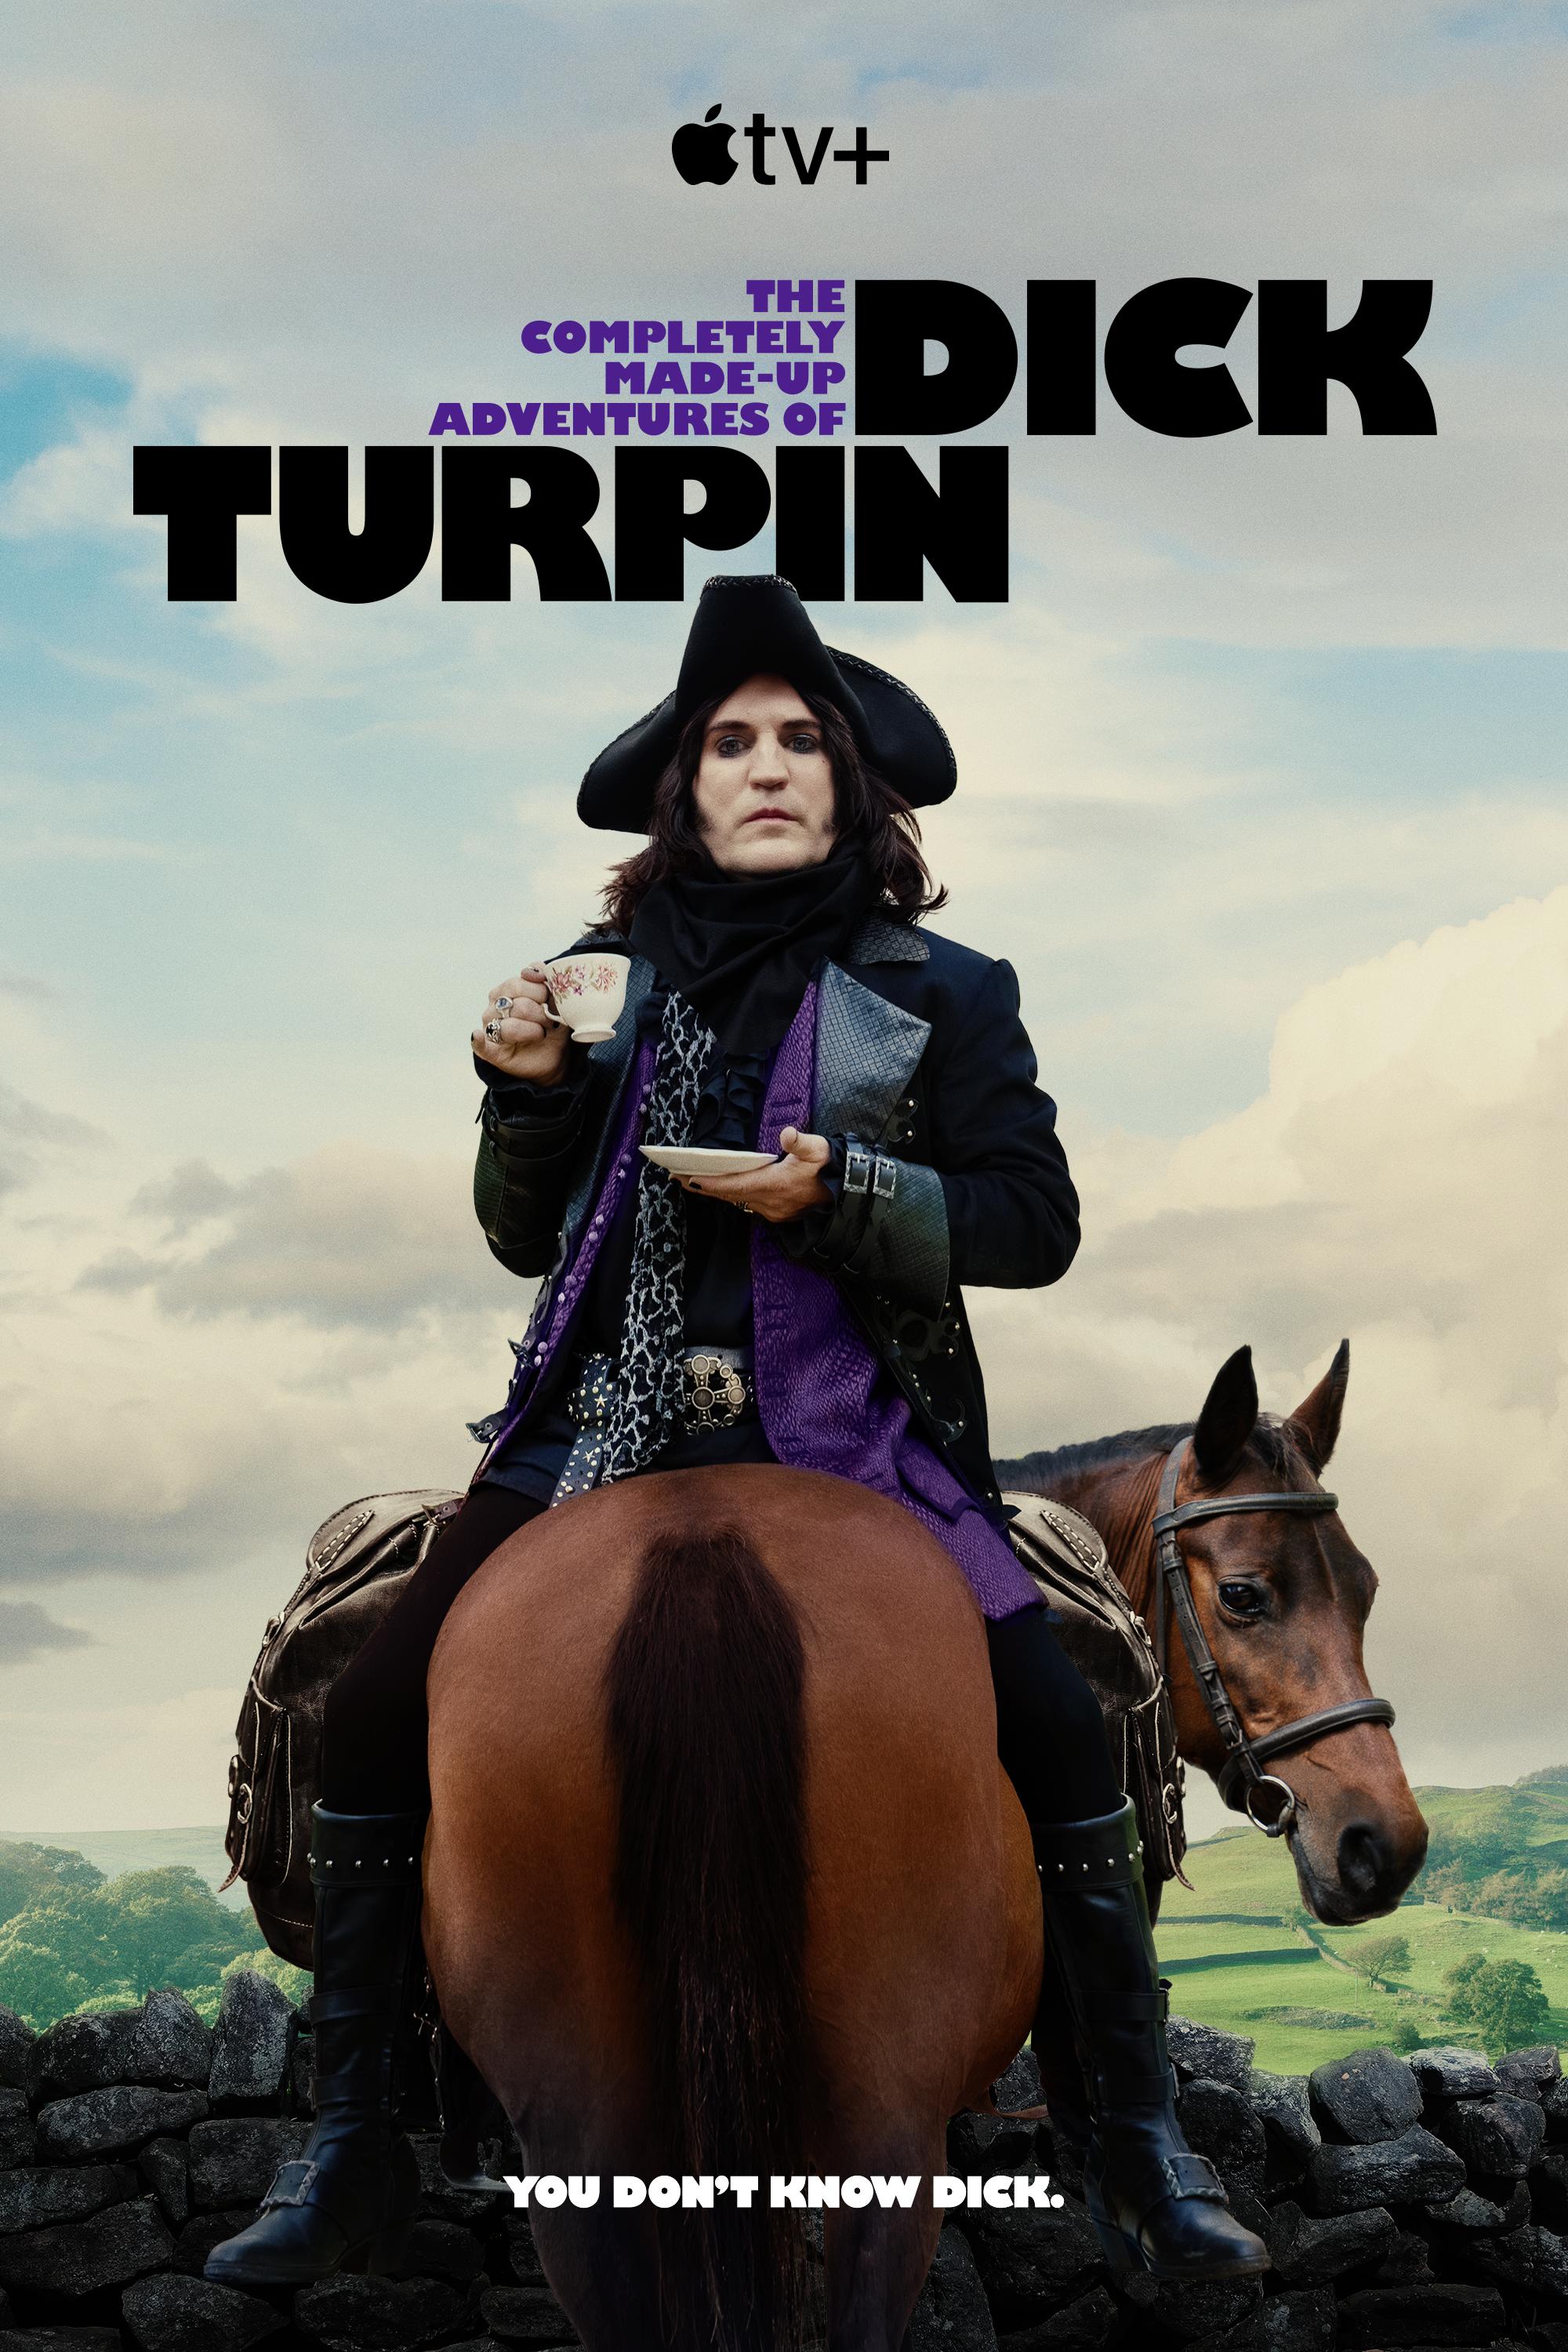 ดูหนังออนไลน์ฟรี The Completely Made-Up Adventures of Dick Turpin